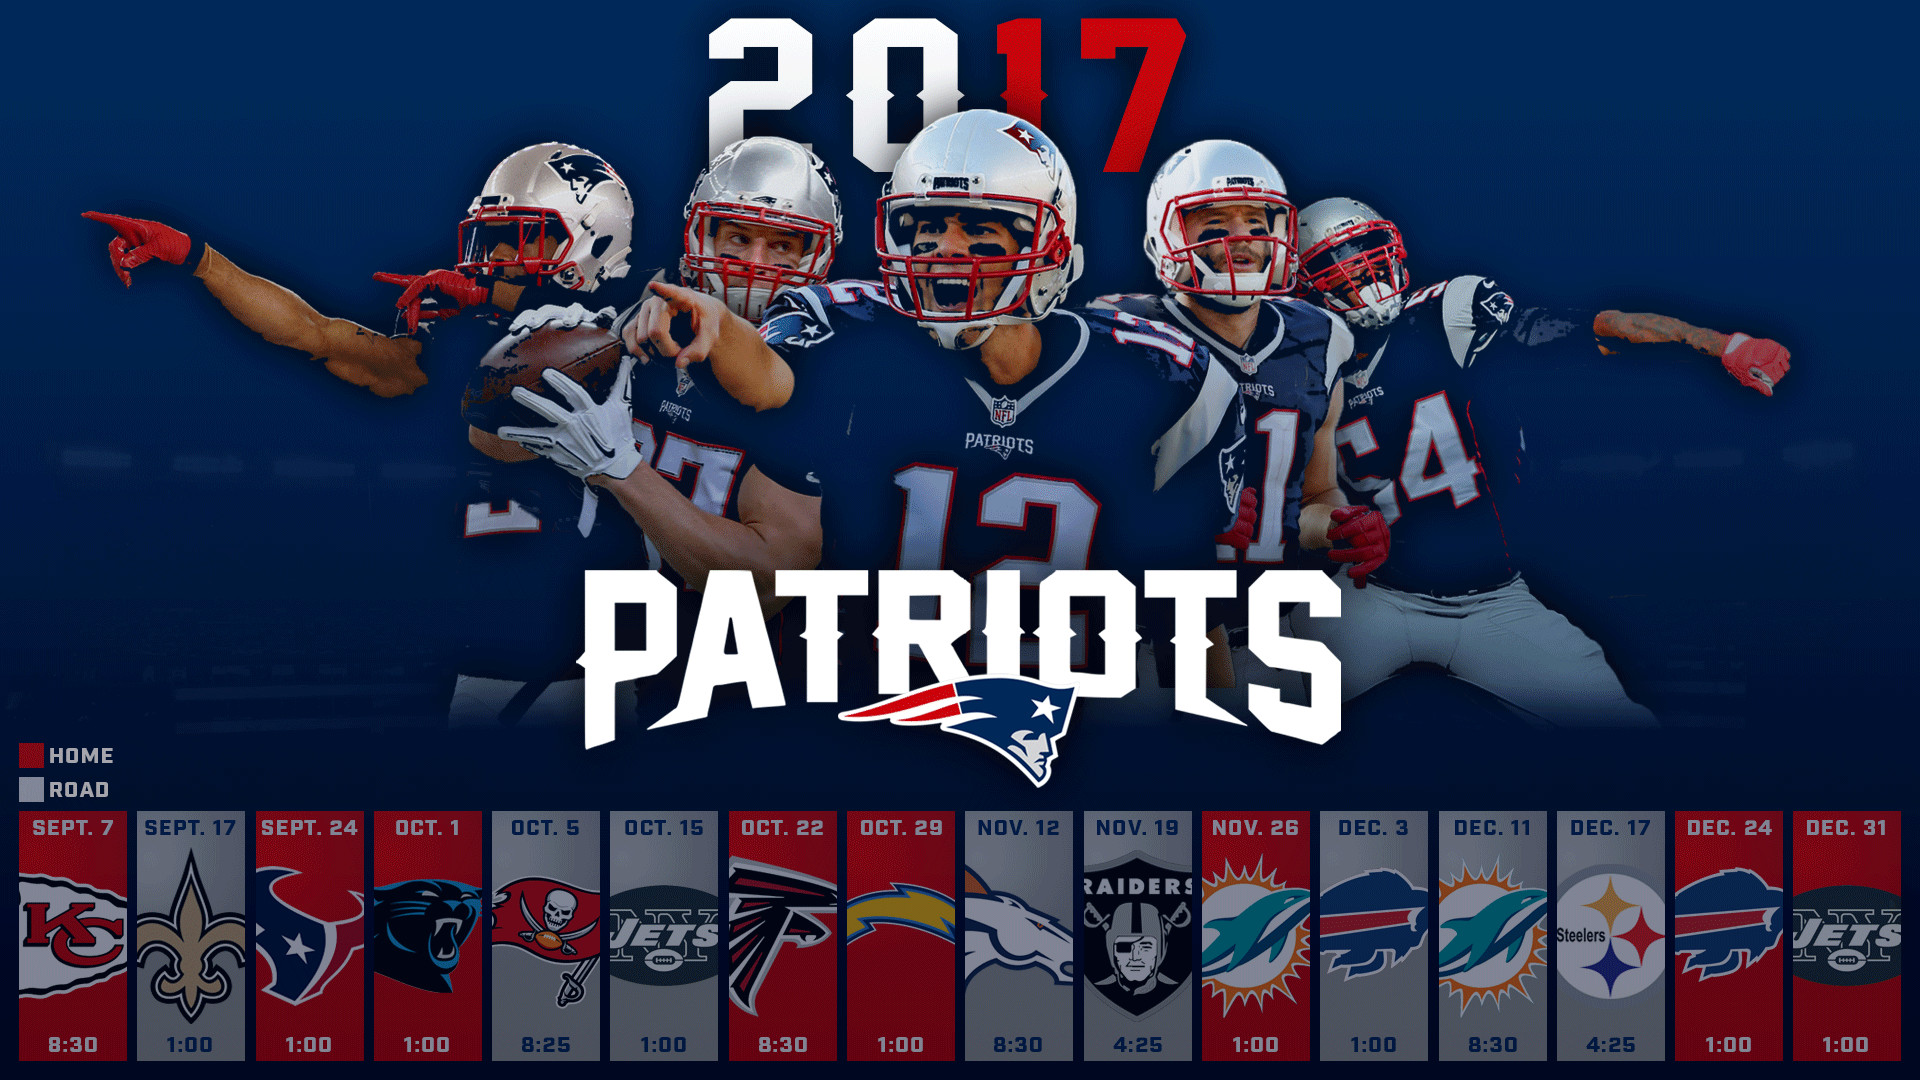 1920x1080 Patriots 2017 Schedule Background ...